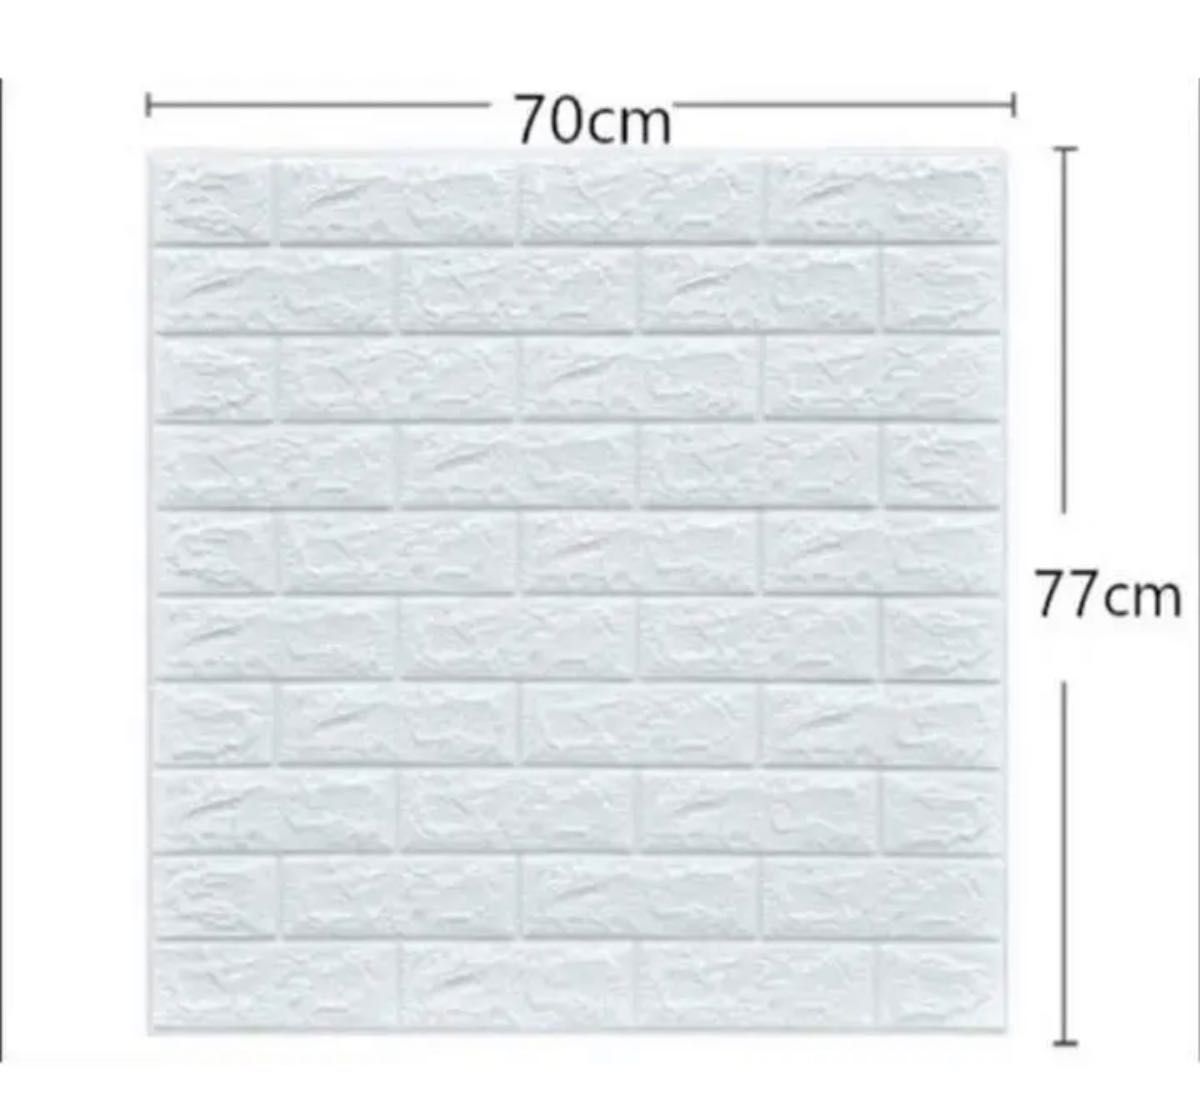 40枚セット 3D壁紙 DIYレンガ調壁紙シール ホワイト レンガ調壁紙 